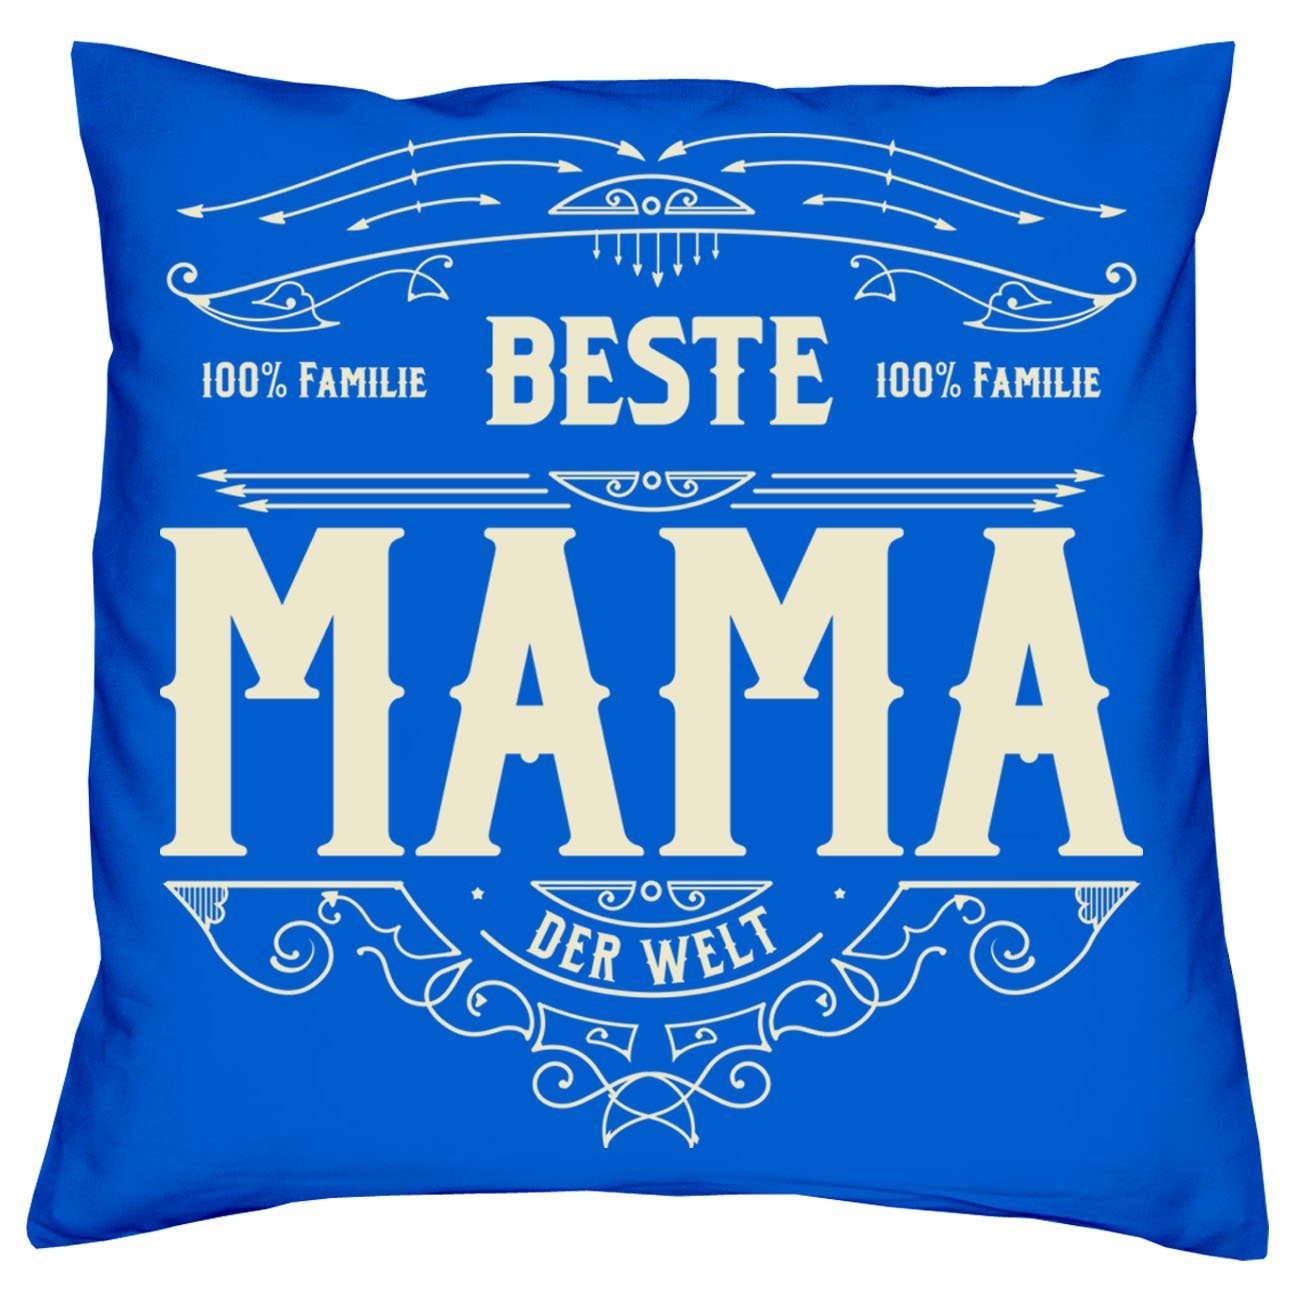 Soreso® Dekokissen Kissen-Set Mama Bester royal-blau für Papa Weihnachtsgeschenk Urkunden, Beste Eltern mit